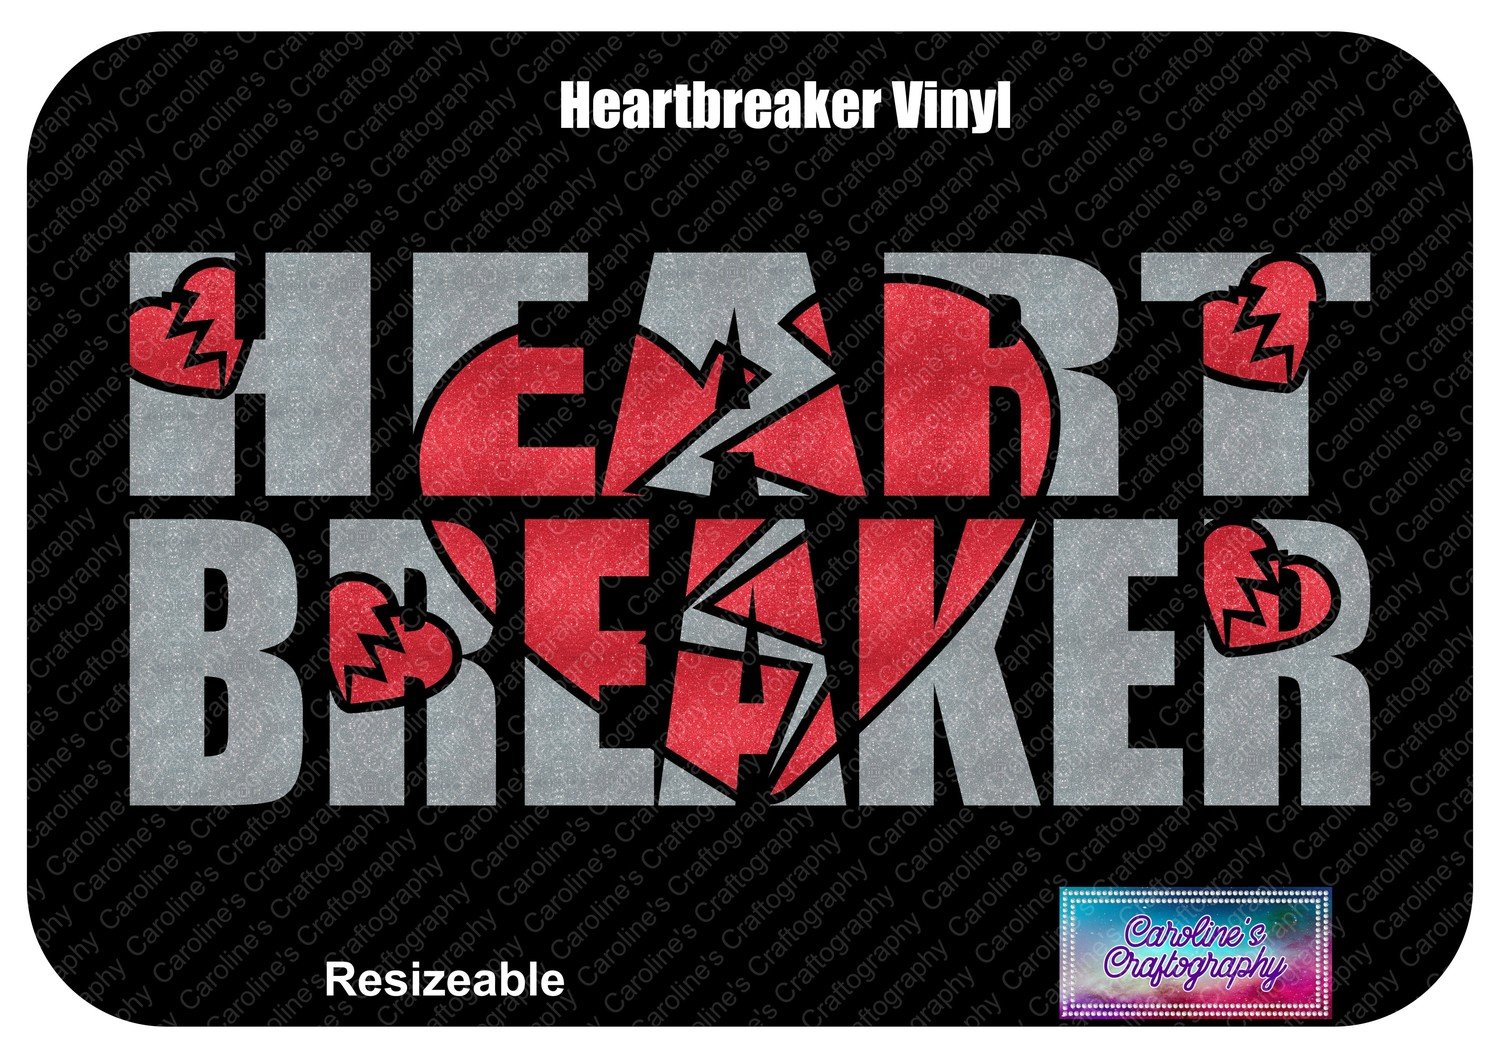 Heartbreaker Vinyl